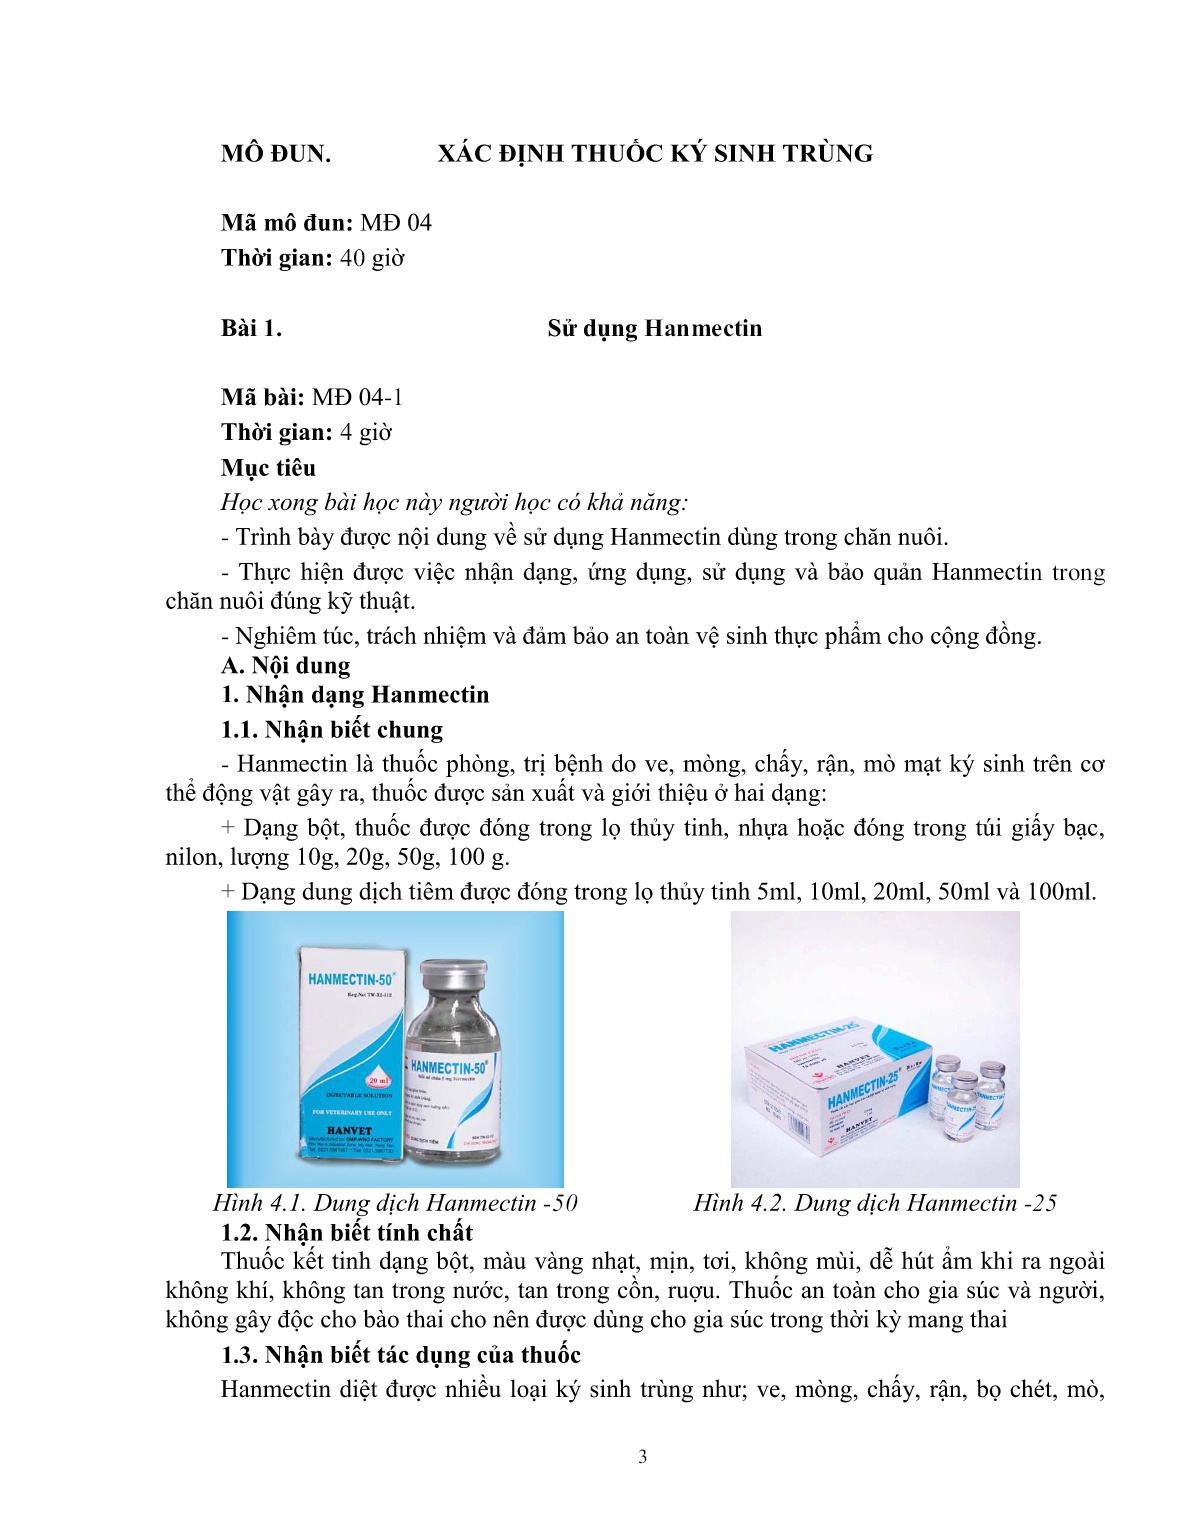 Giáo trình mô đun Xác định thuốc ký sinh trùng (Trình độ: Đào tạo dưới 3 tháng) trang 4